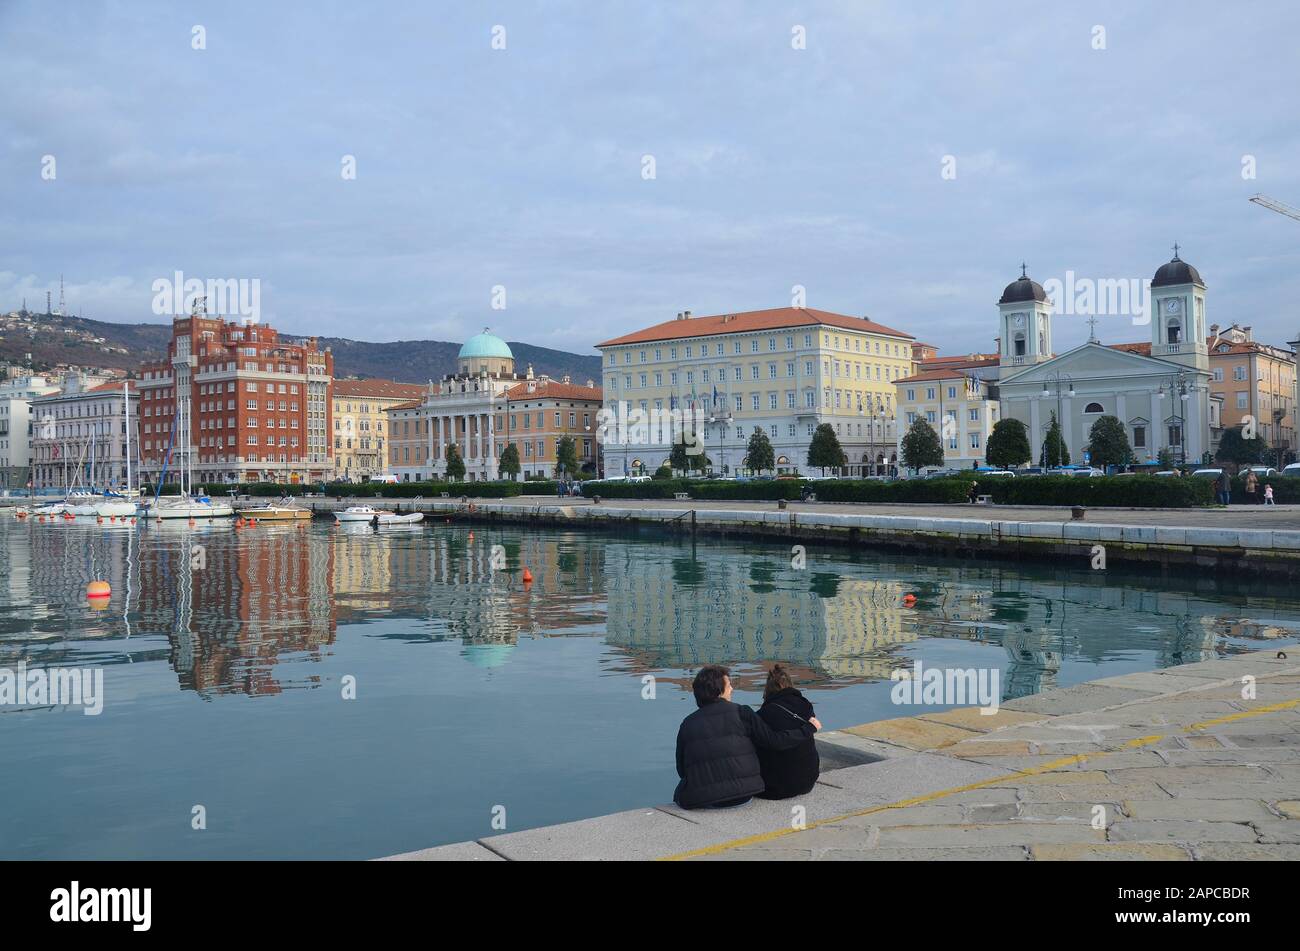 Trieste, Italien: Hafenstadt an der Adria: Am Hafen, mit griechisch-ortodoxer Kirche Foto Stock